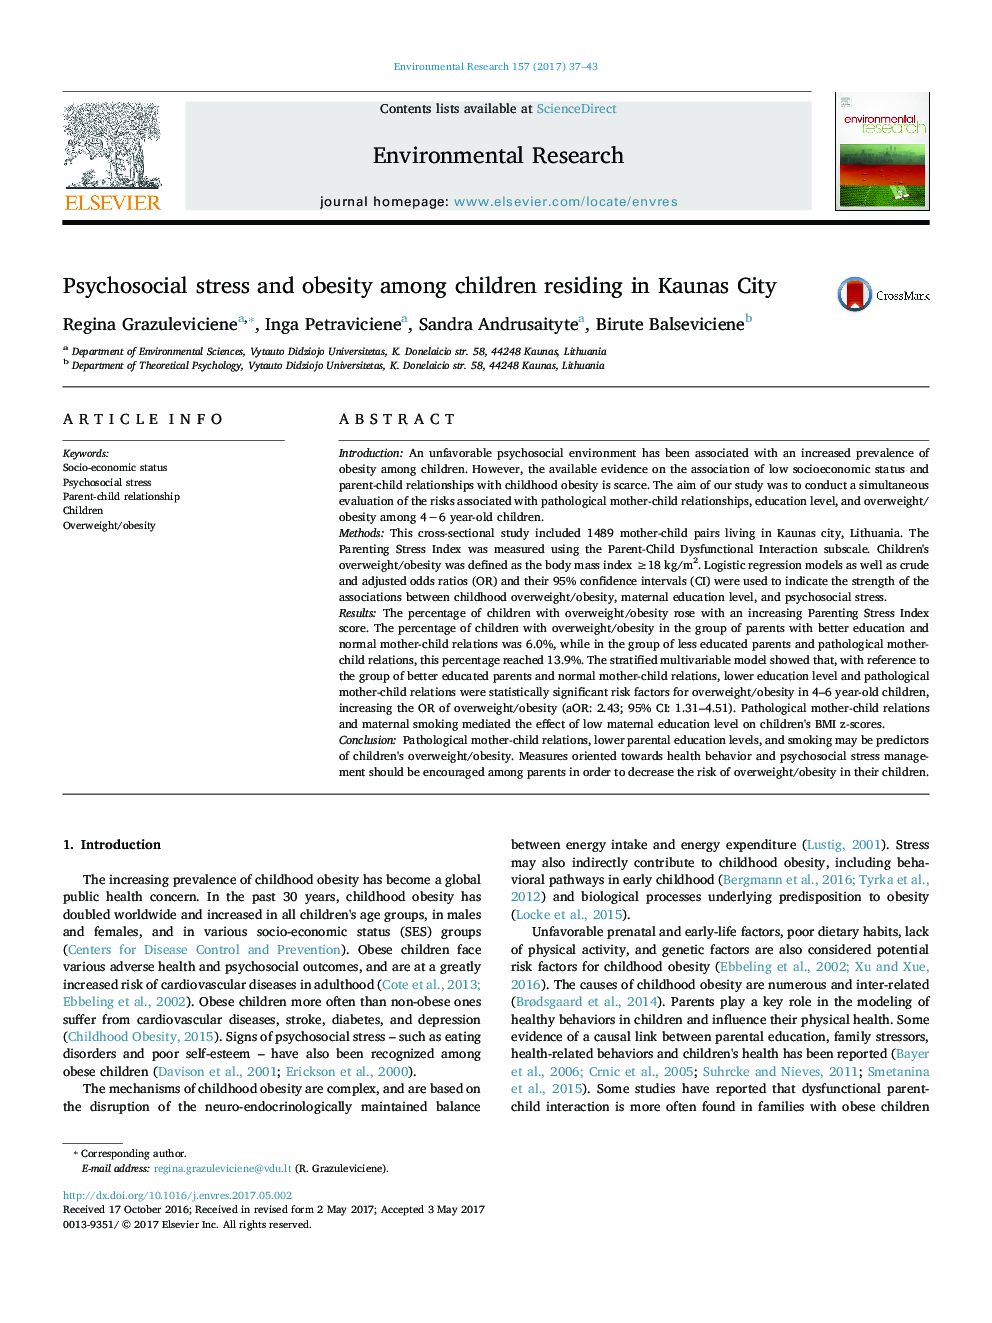 استرس روانی اجتماعی و چاقی در میان کودکان ساکن شهر قائم 